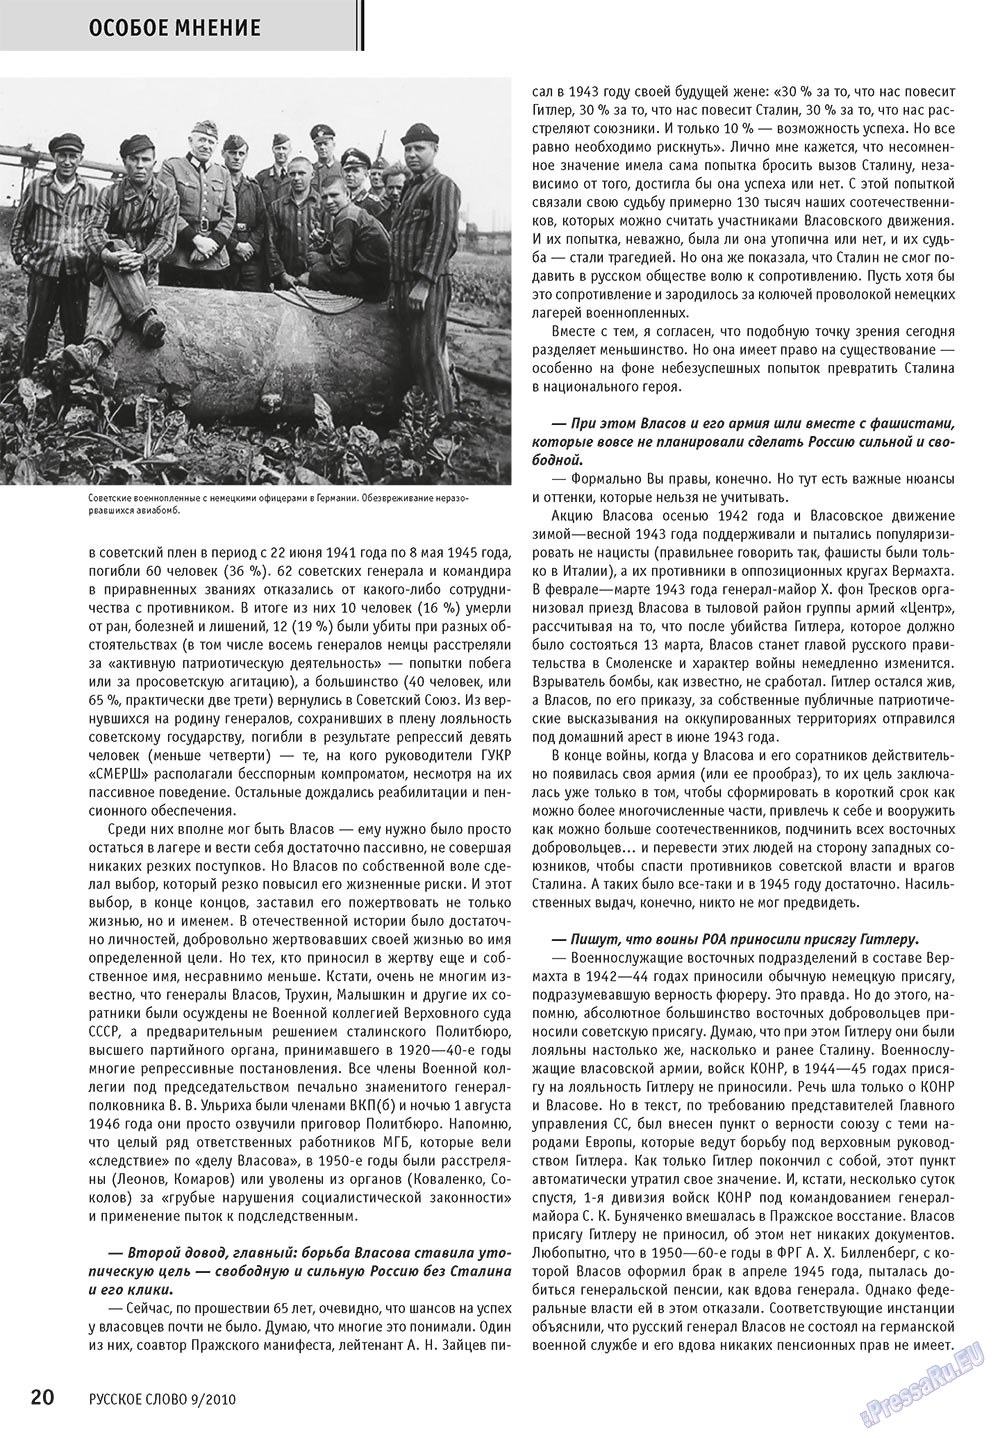 Русское слово, журнал. 2010 №9 стр.22